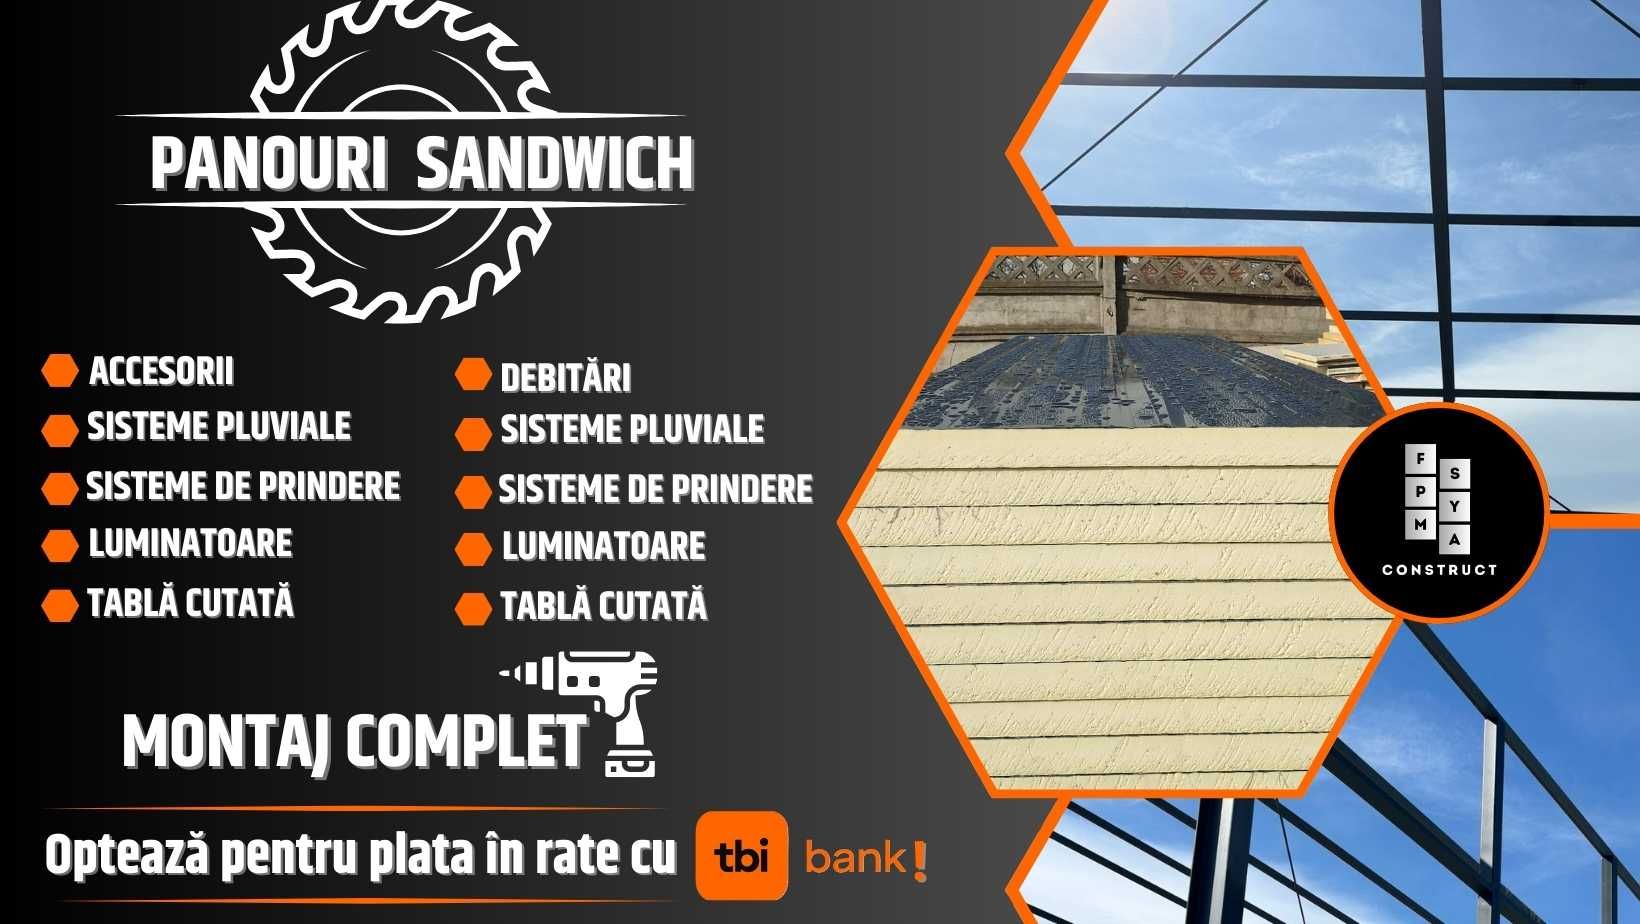 Panouri Sandwich/Accesorii/Constructii Modulare + Montaj - Plata rate